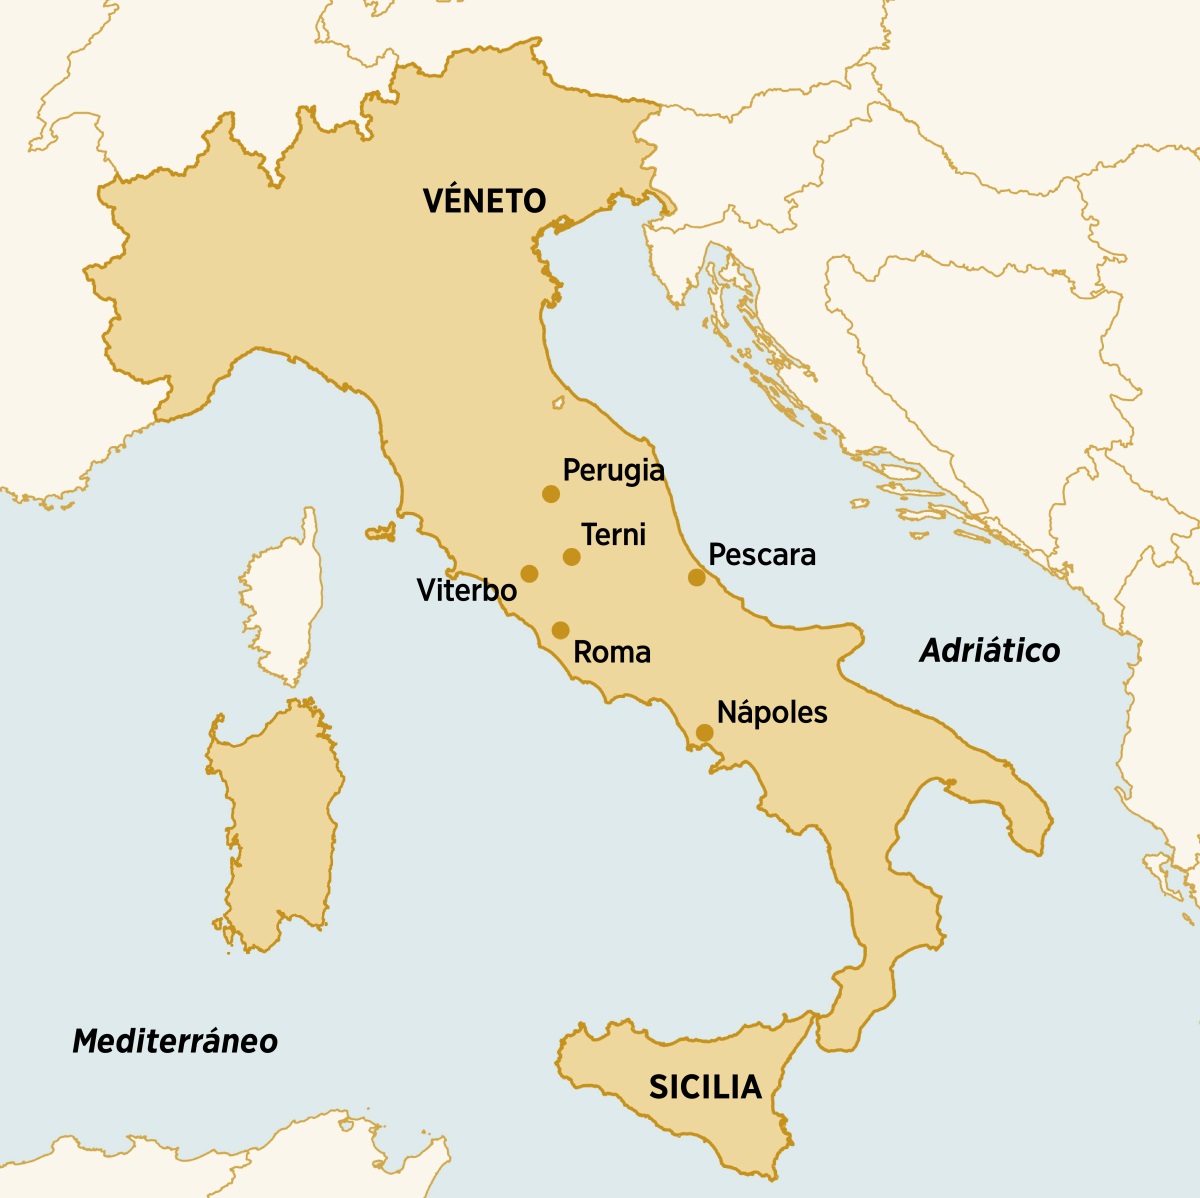 Mapa de los lugares de Italia donde Dorina Caparelli vivió, predicó y asistió a asambleas: Véneto, Perugia, Terni, Pescara, Sicilia, Nápoles, Roma y Viterbo.